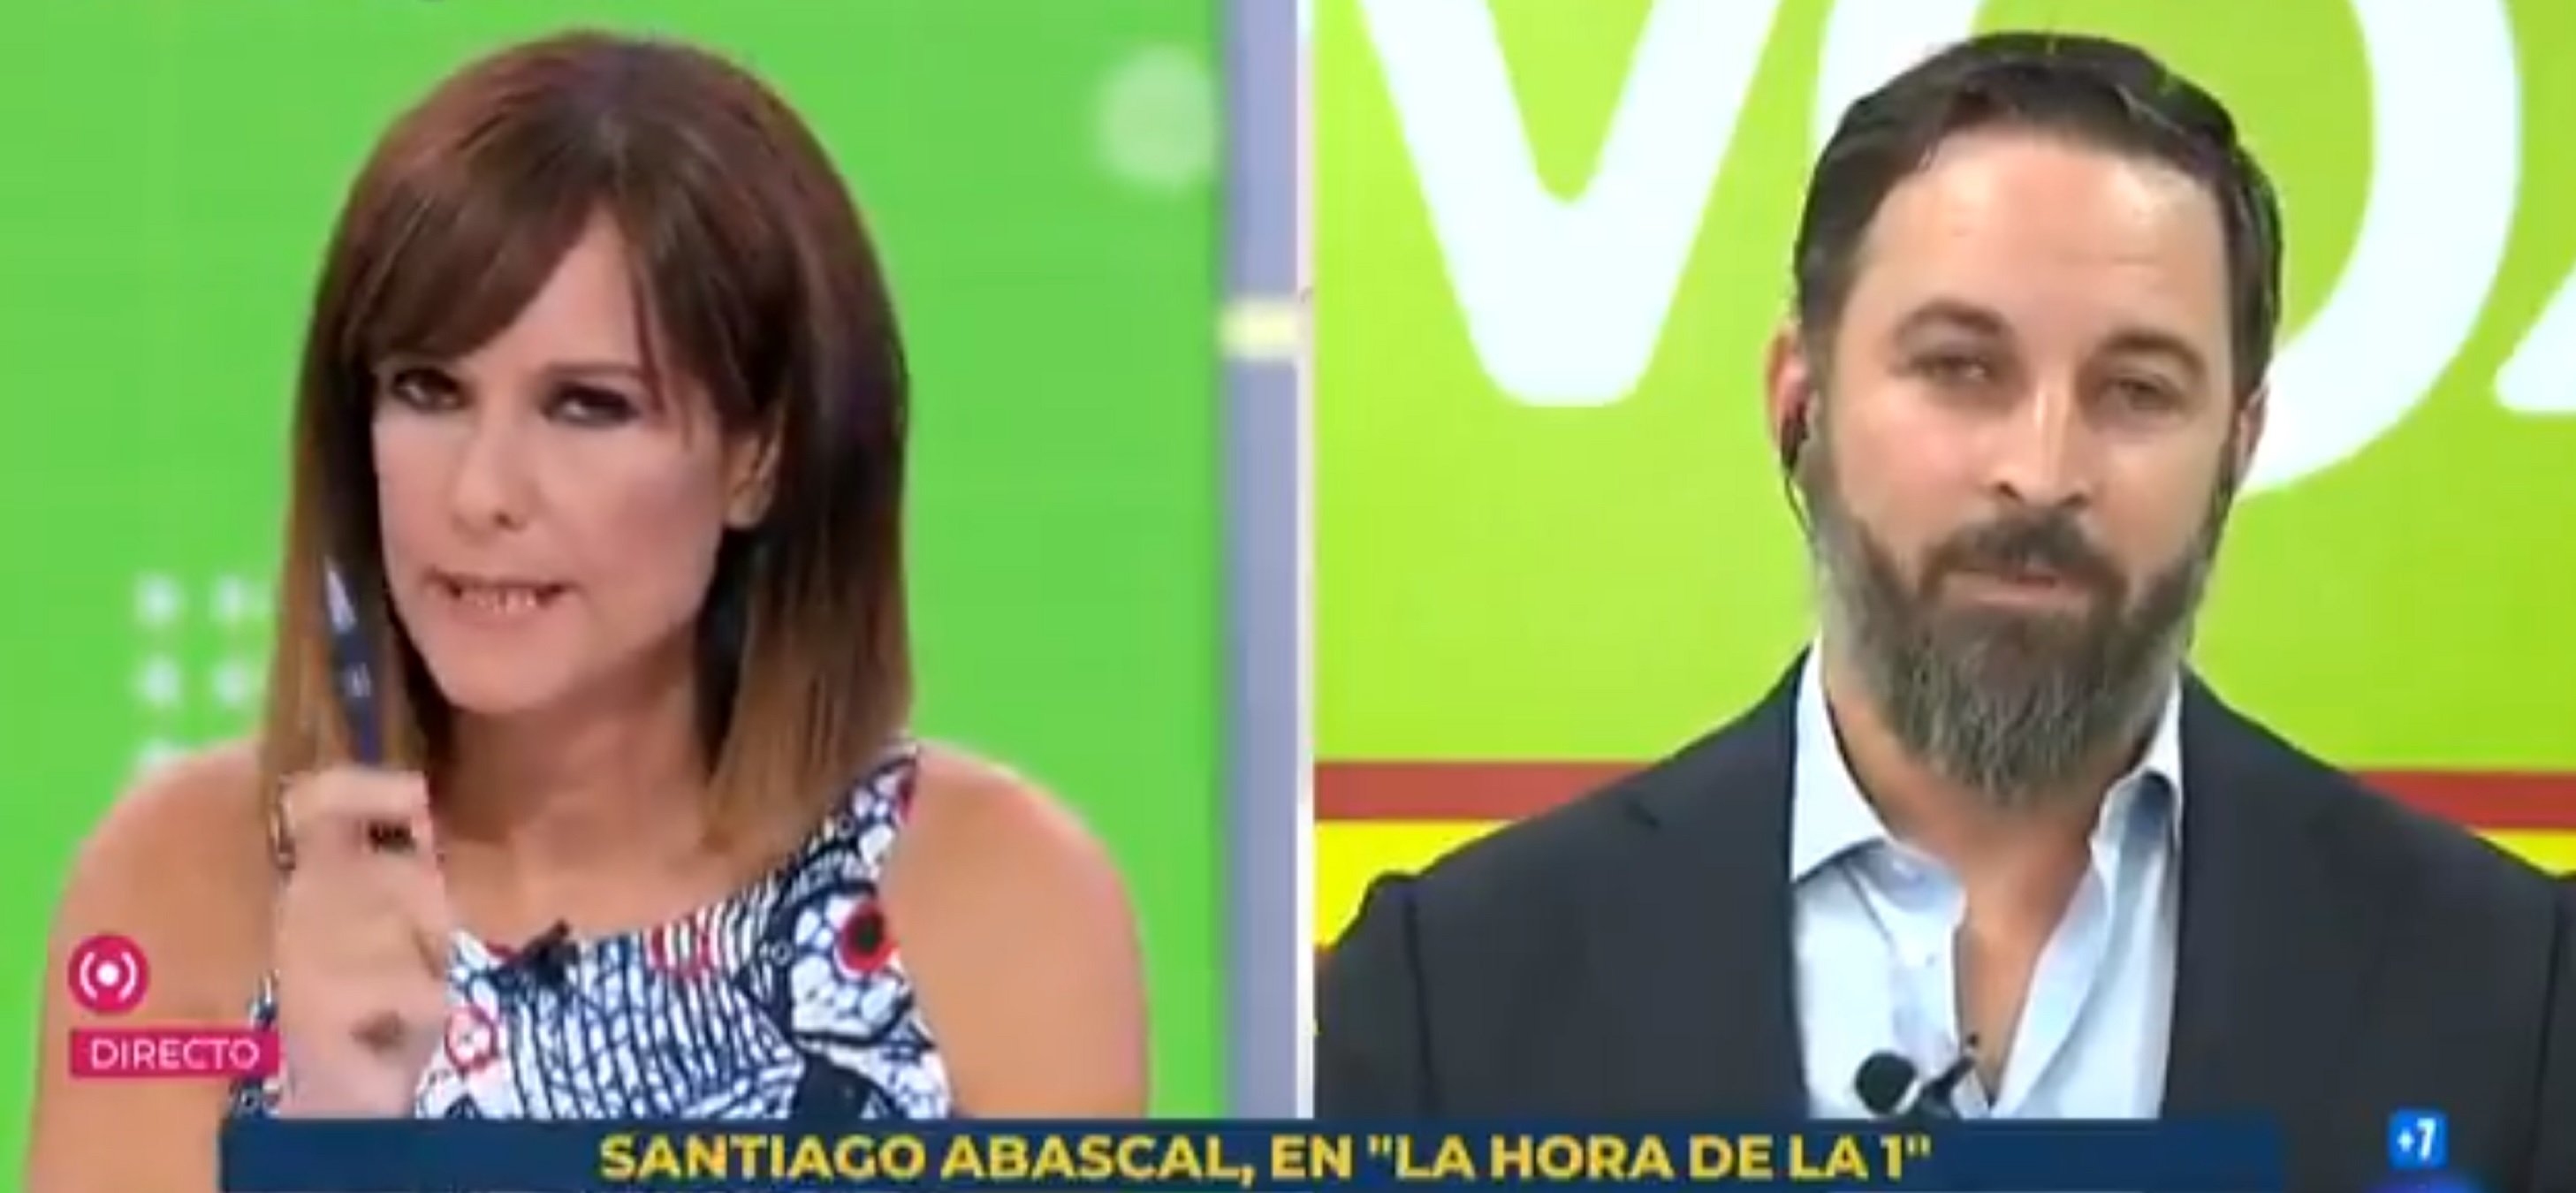 Santiago Abascal chulea a Mónica López en directo: "No les riña", "No contesto"